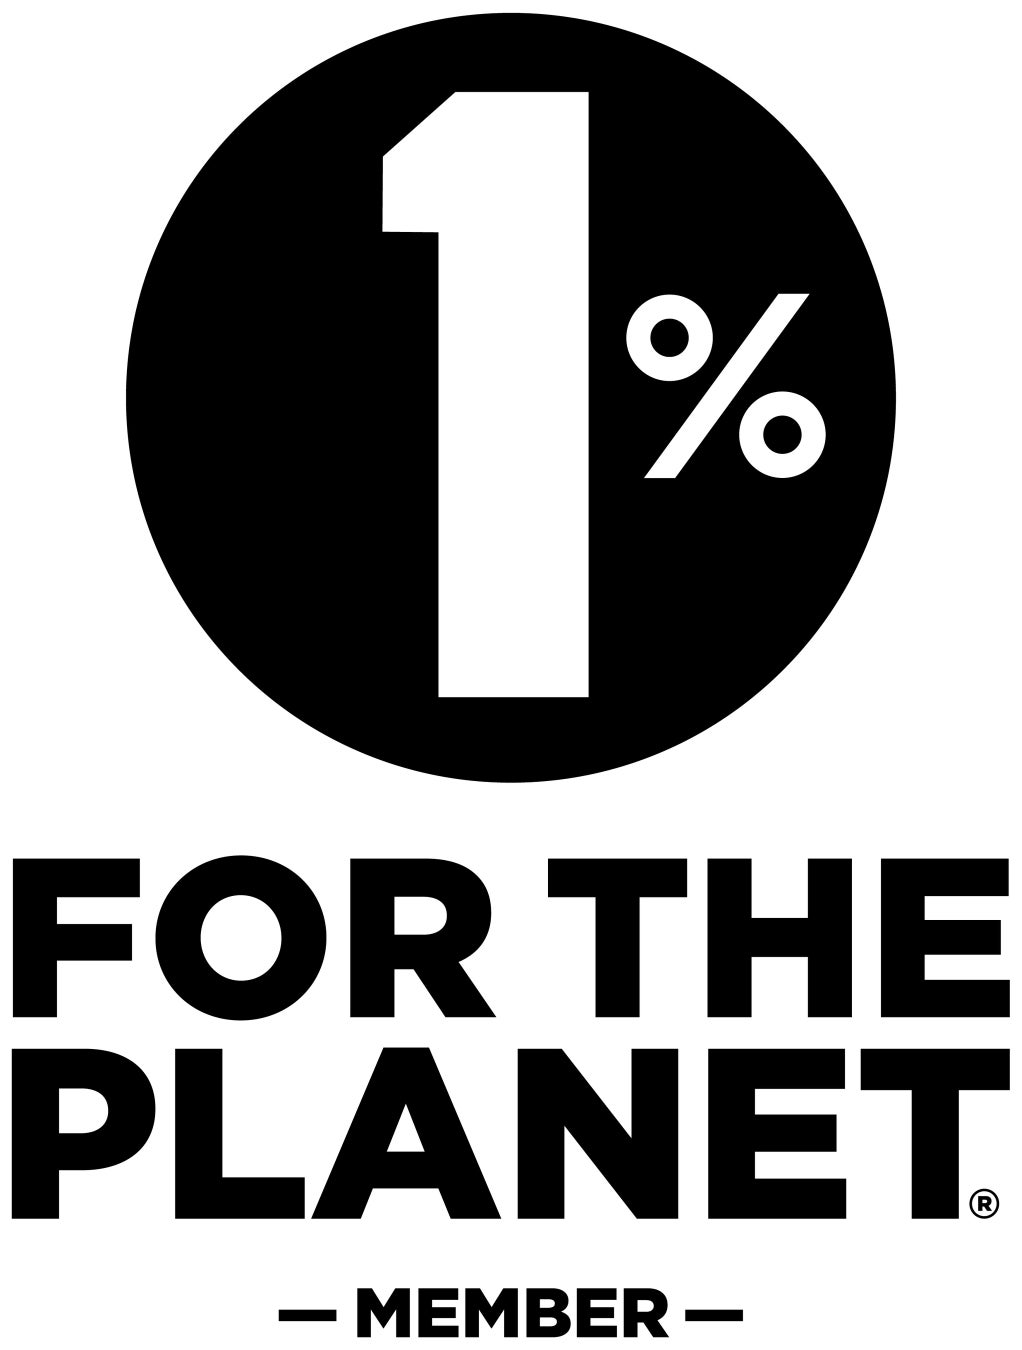 2023.4.6 start「地球に敬意を」をスローガンに掲げるオーガニックコスメブランドが始める。未来のための活動のサブ画像6